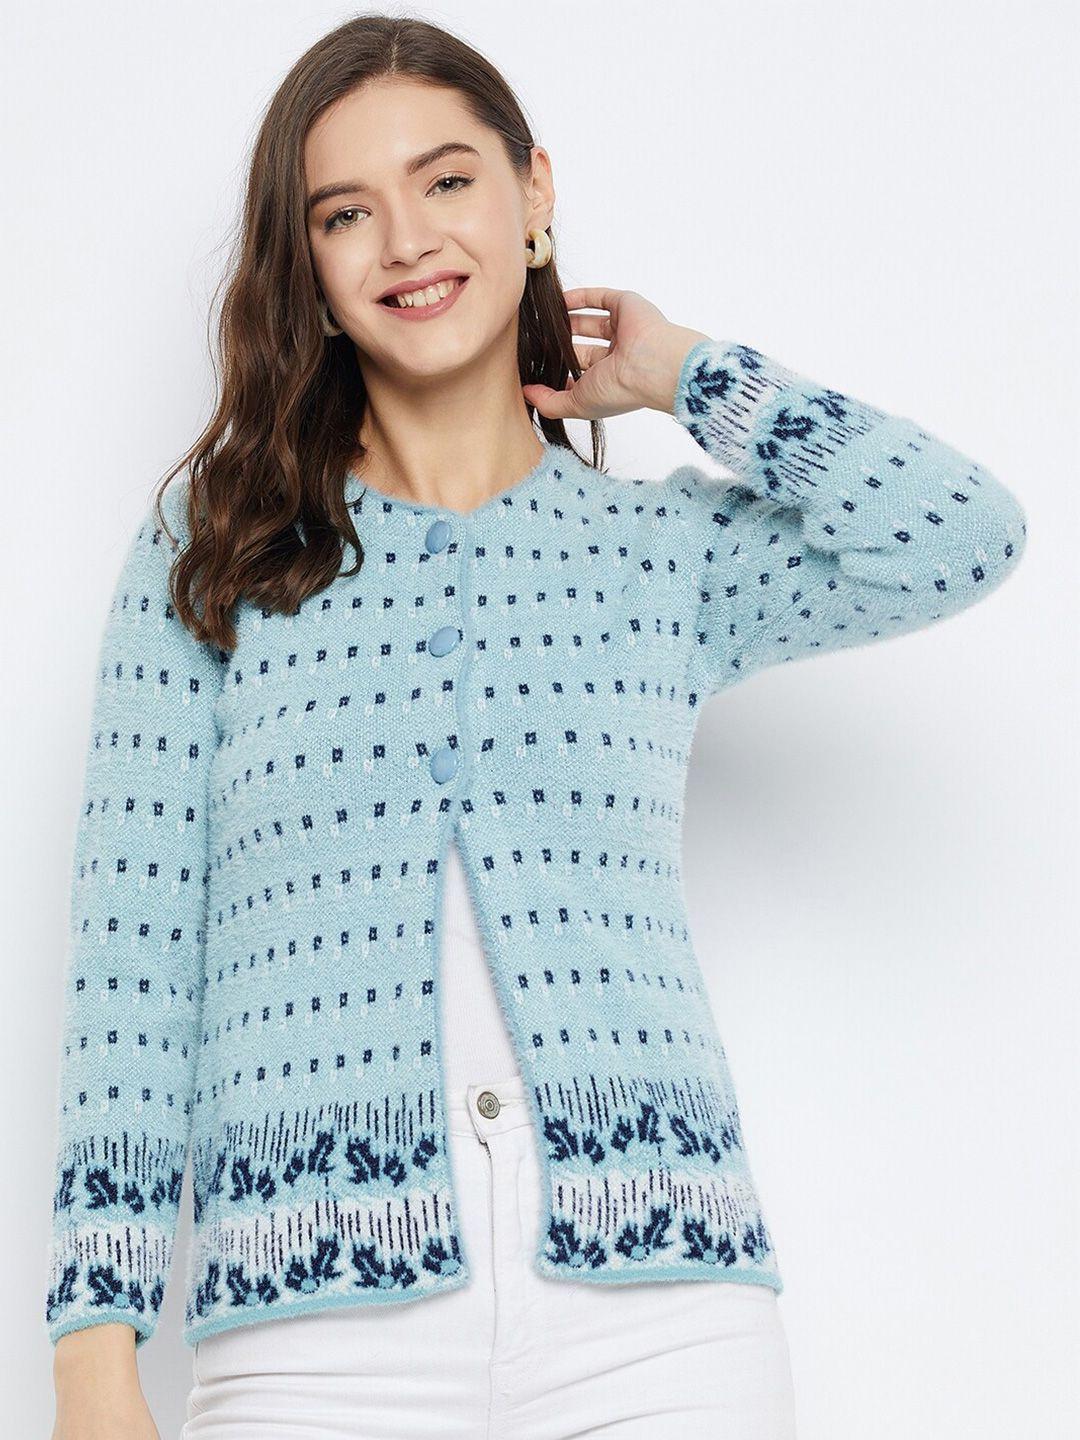 zigo quirky self design woollen cardigan sweater